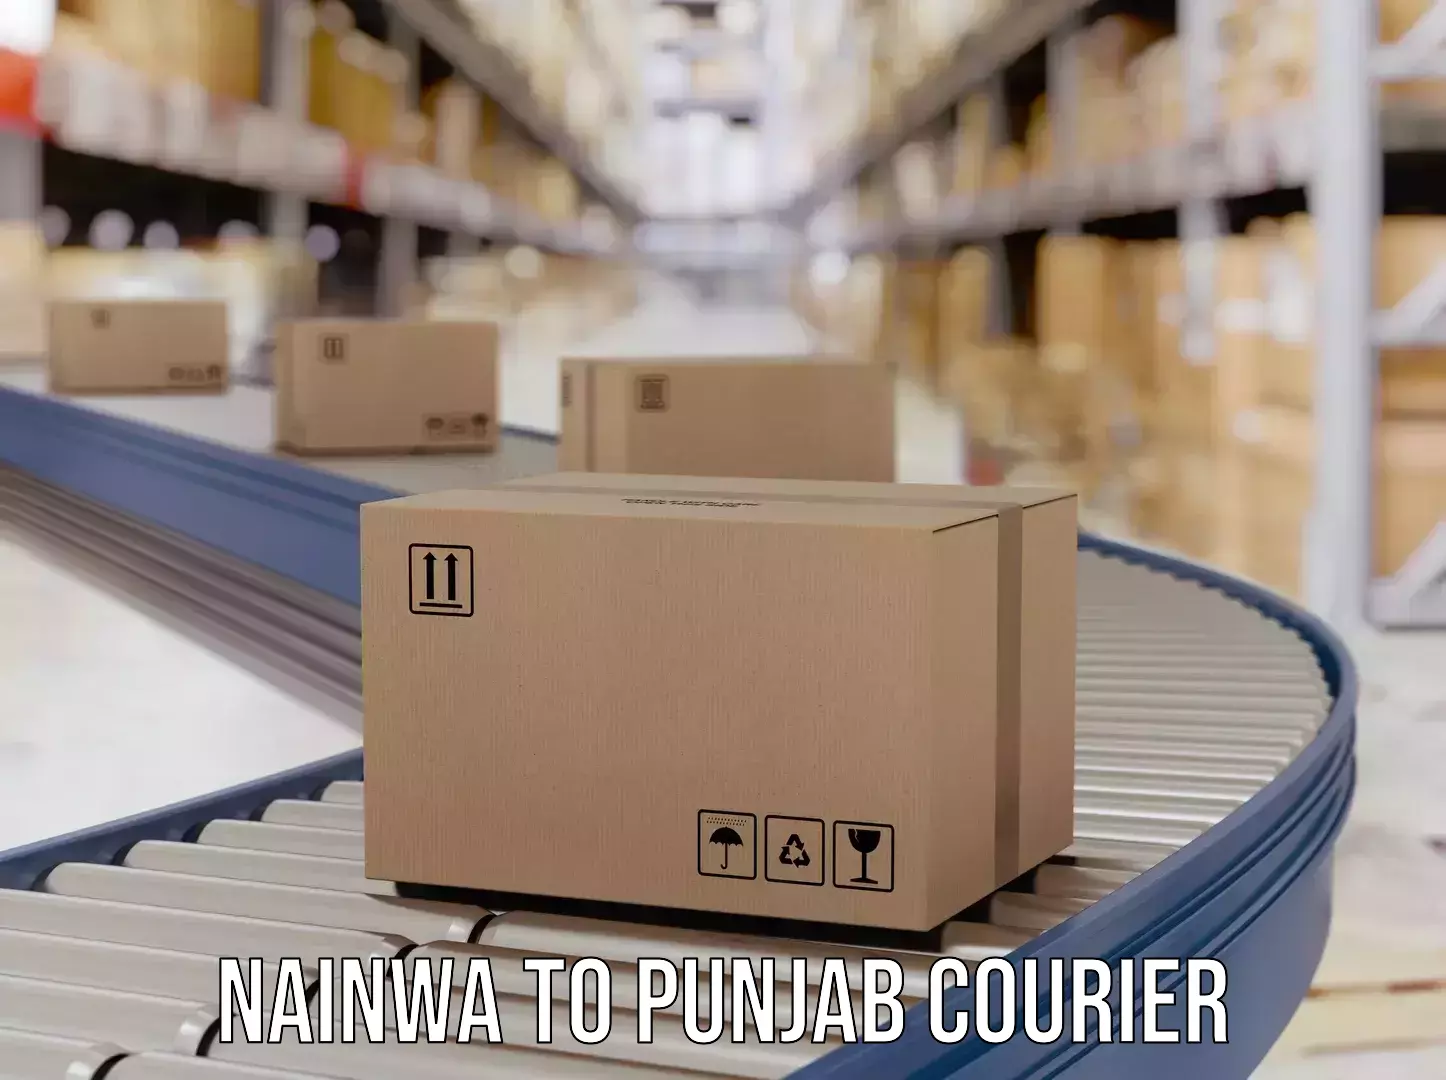 Integrated shipping services Nainwa to Punjab